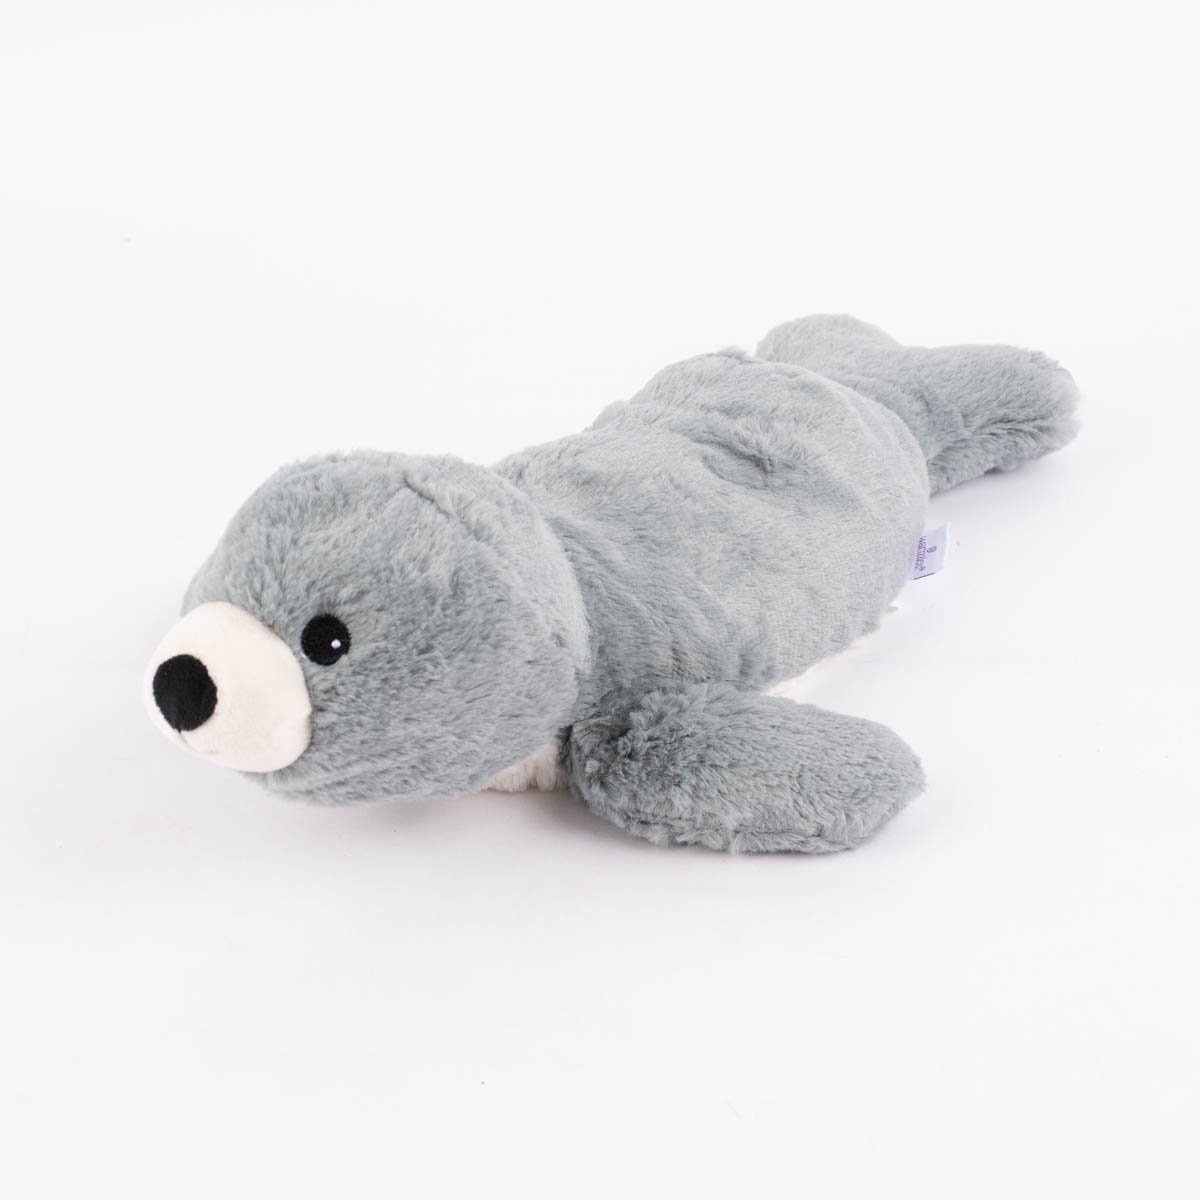 Warmies® Dekokissen Wärmetier Seehund grau weiß schwarz braun 100% Hirse-Lavendelfüllun